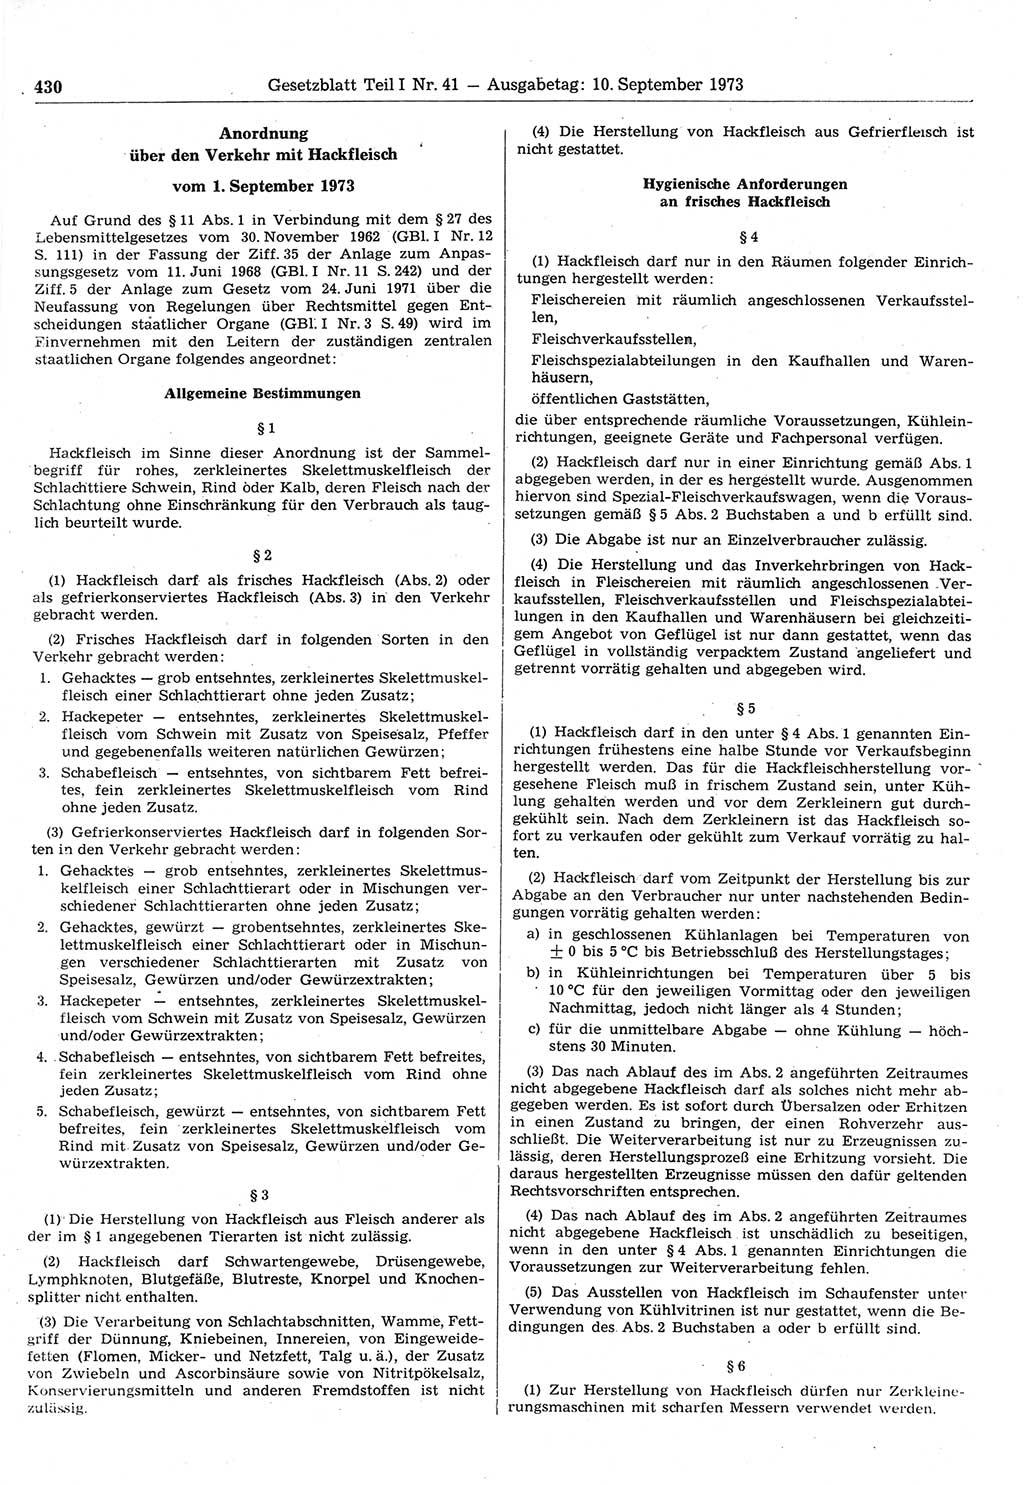 Gesetzblatt (GBl.) der Deutschen Demokratischen Republik (DDR) Teil Ⅰ 1973, Seite 430 (GBl. DDR Ⅰ 1973, S. 430)